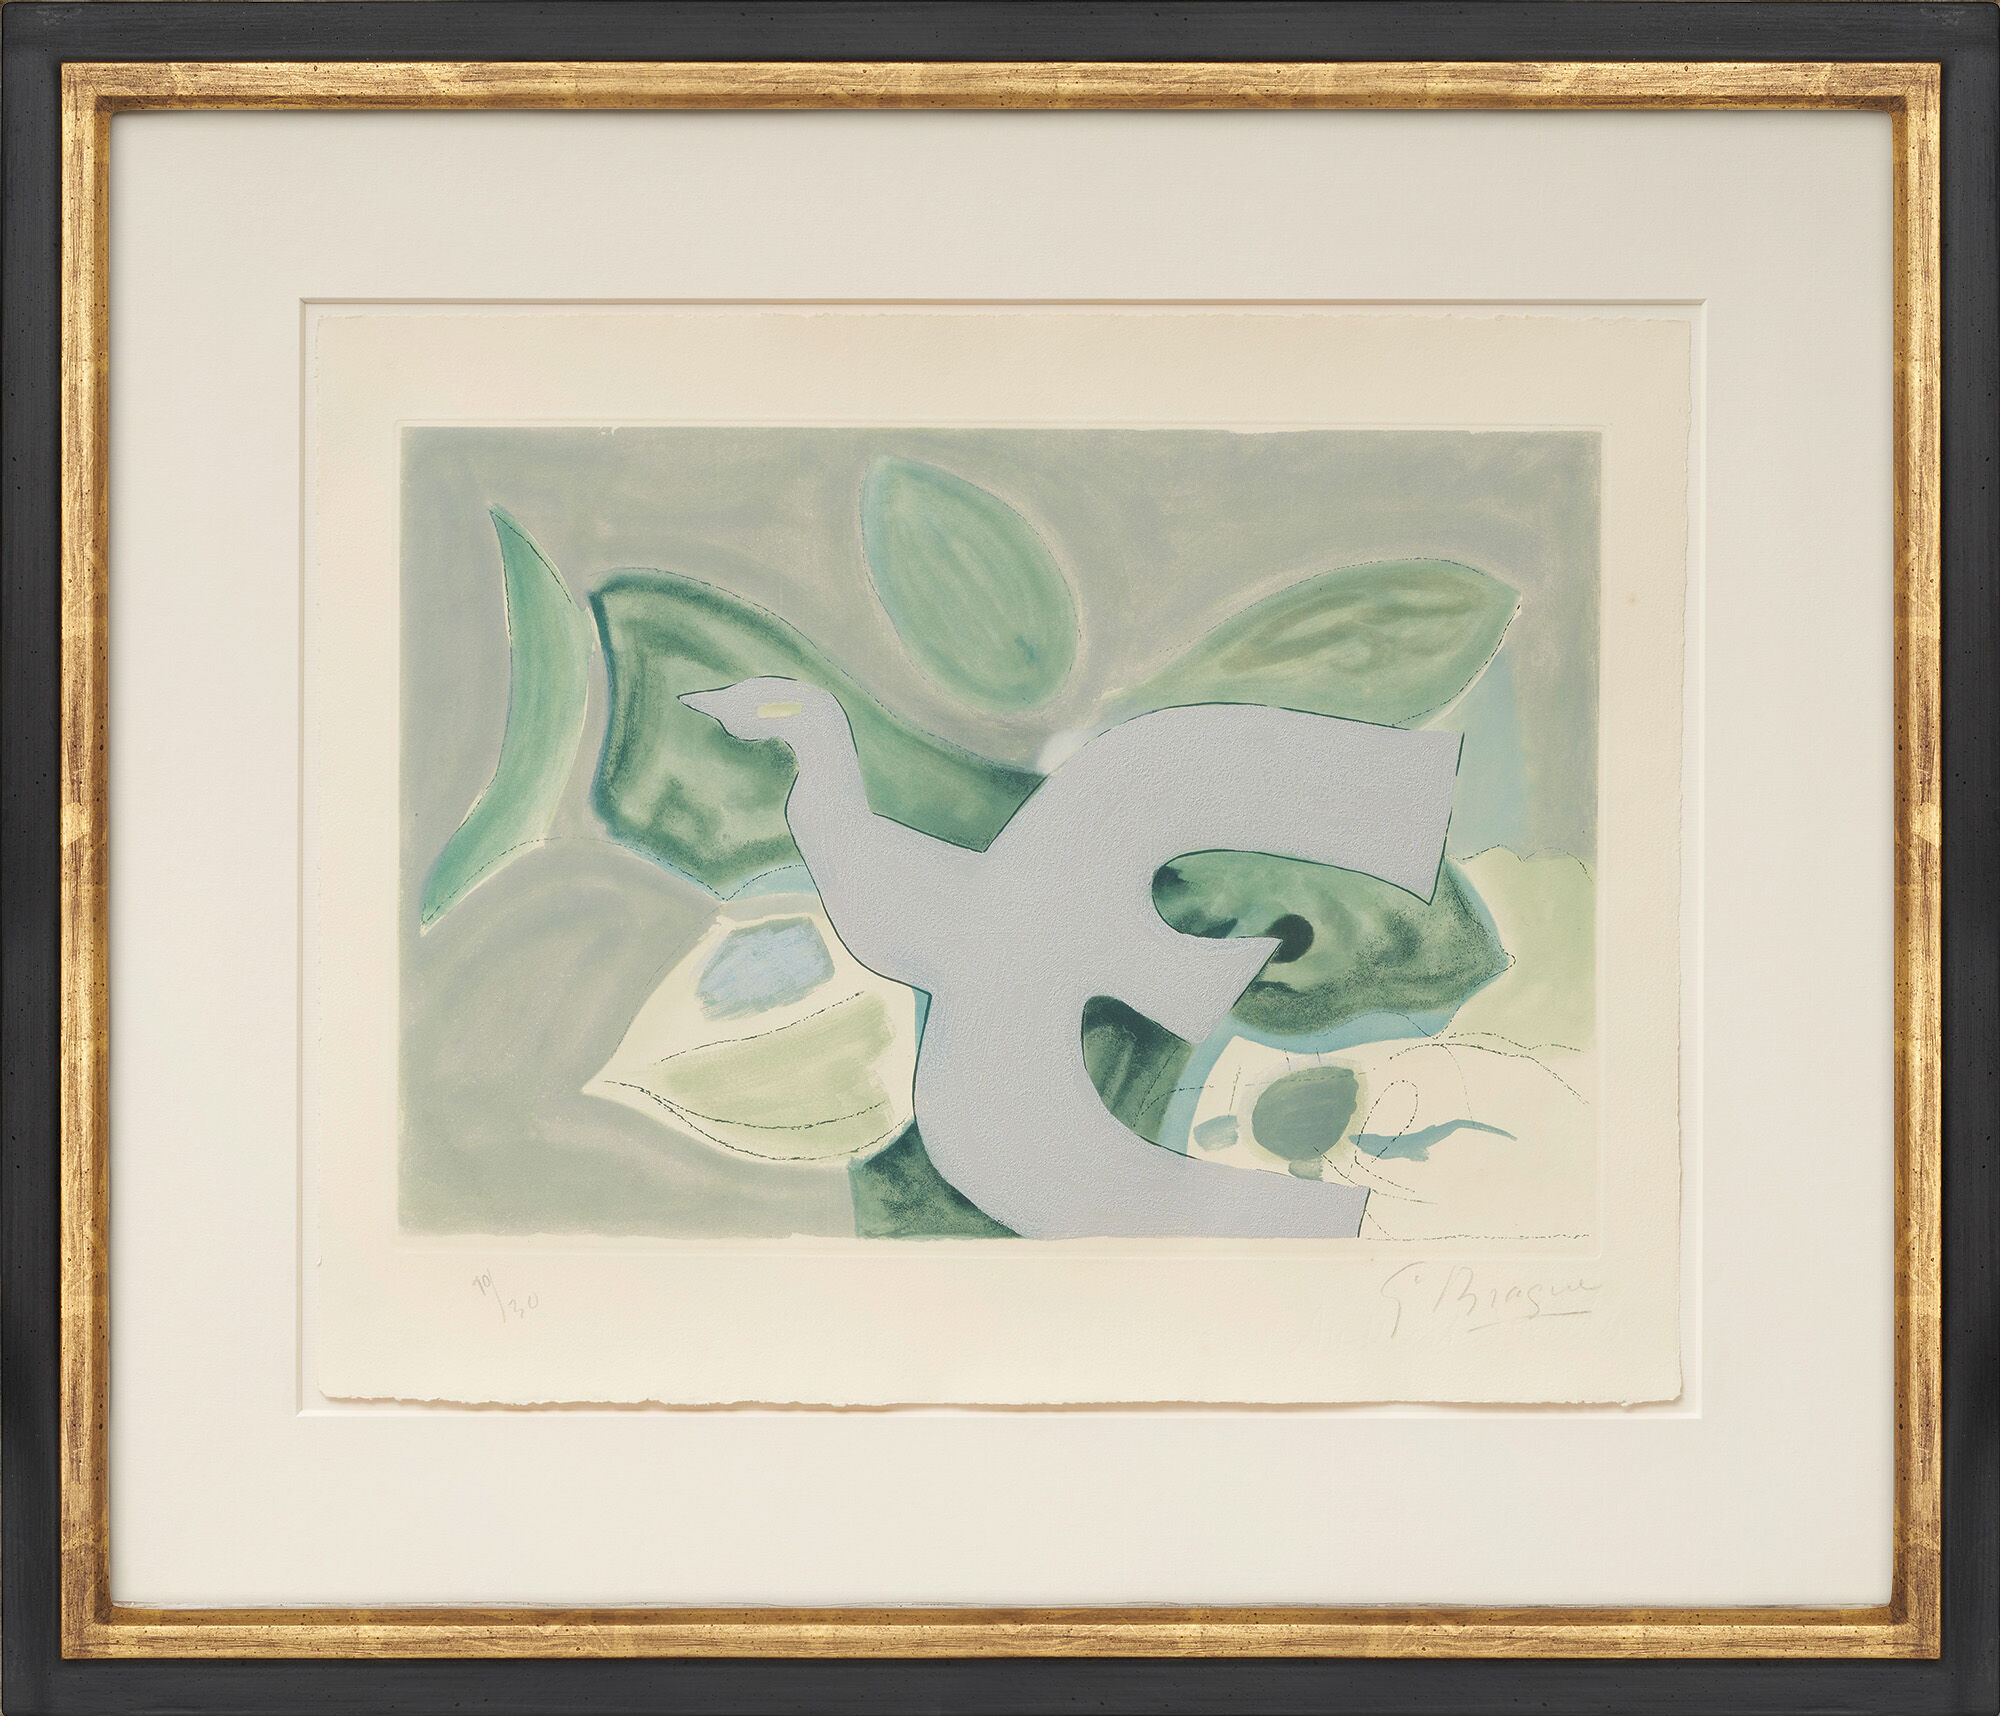 Billede "Oiseau gris sur fond vert" (1962) von Georges Braque